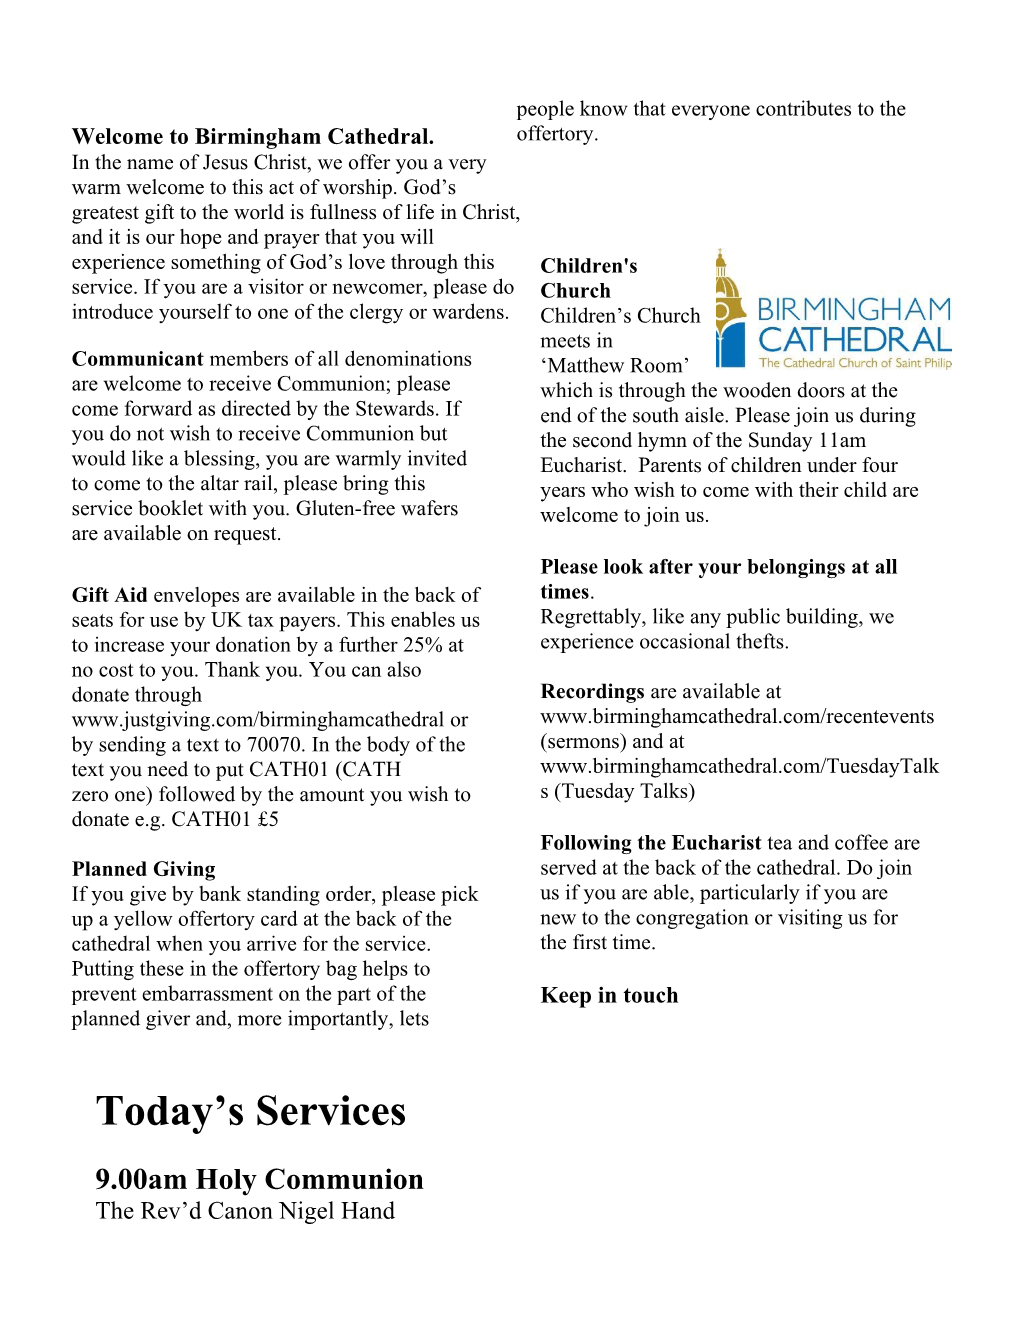 Birmingham Cathedral Notices REV 11/13